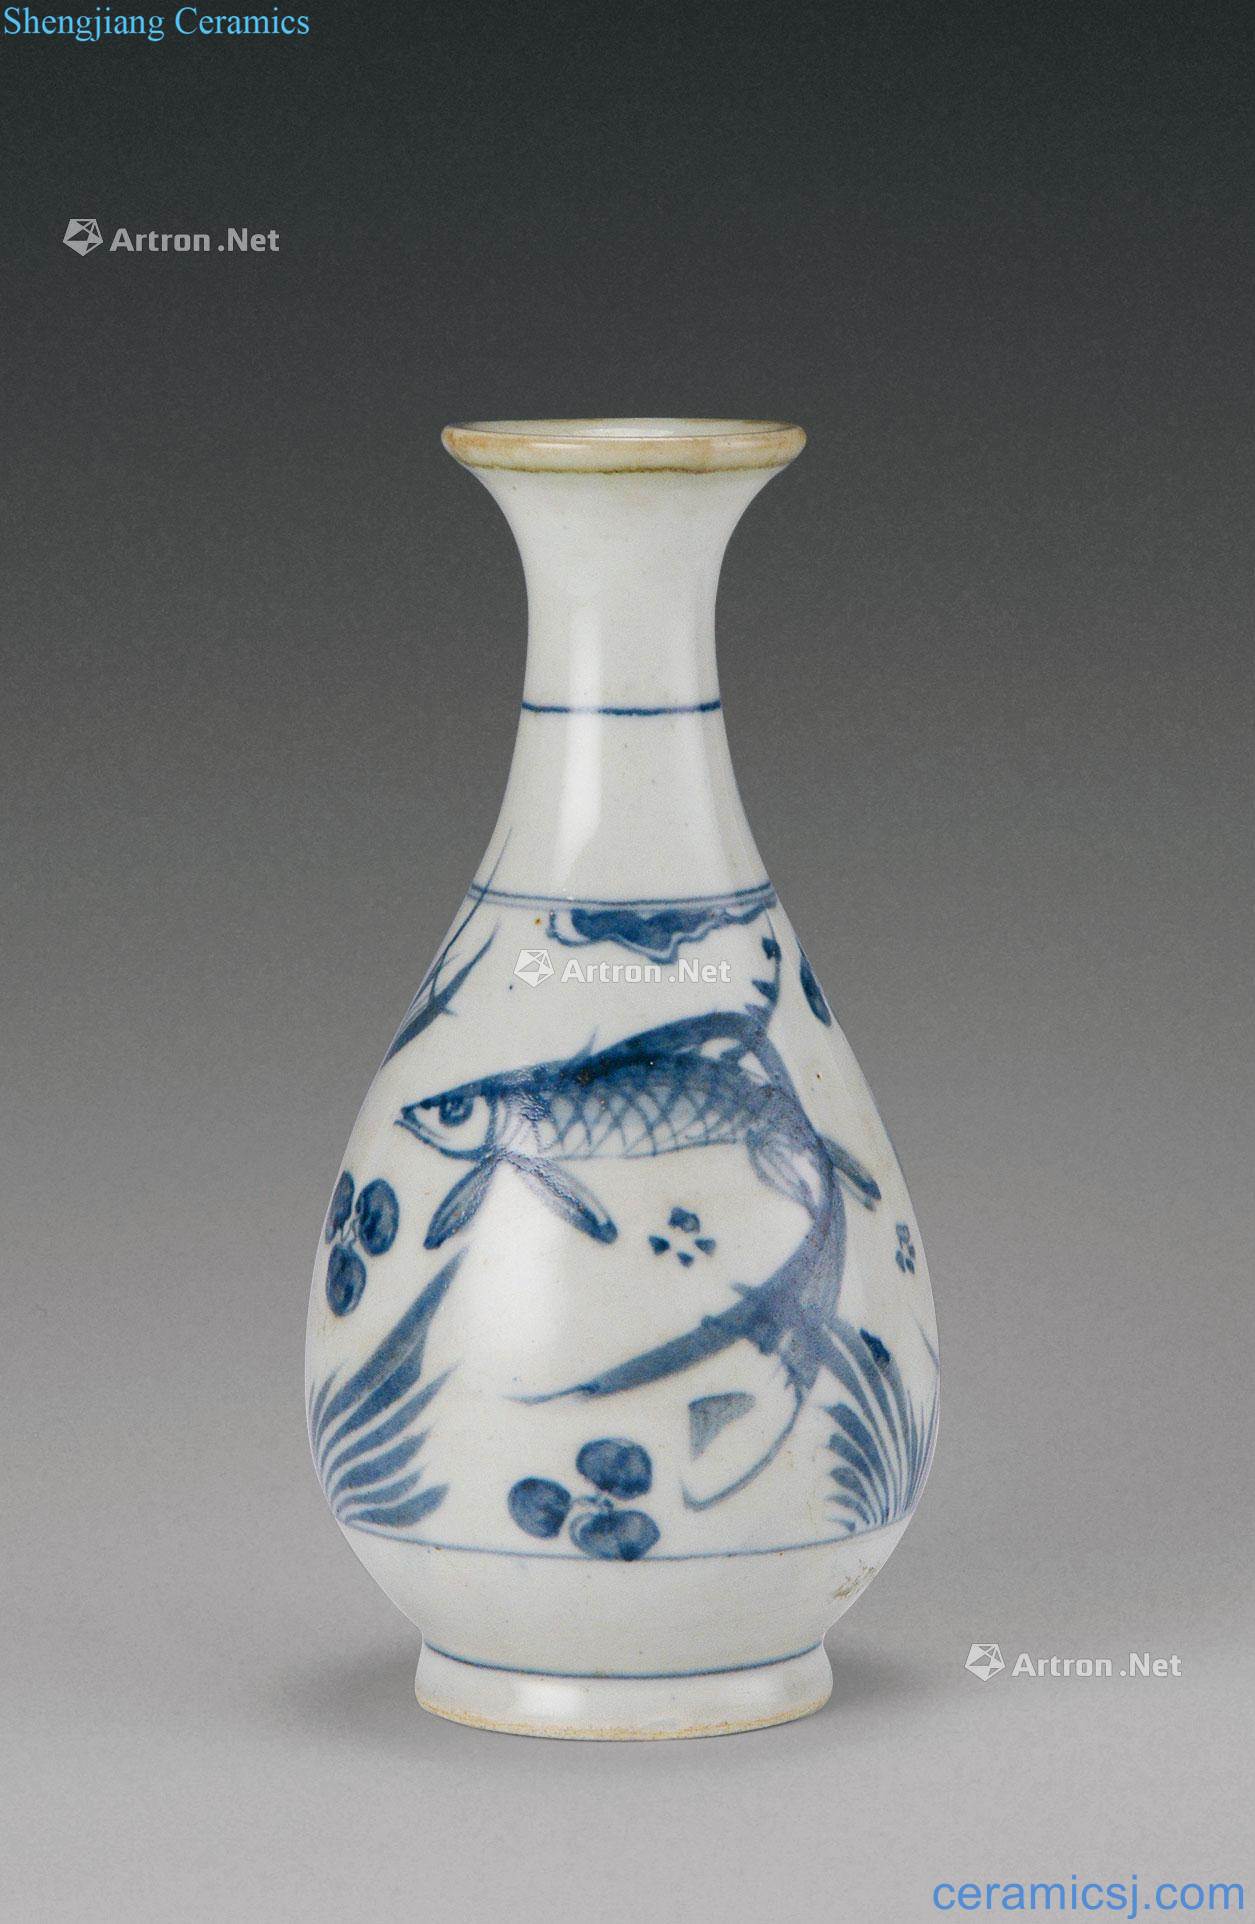 In the Ming dynasty (1368-1644), mackerel algal grain okho spring bottle